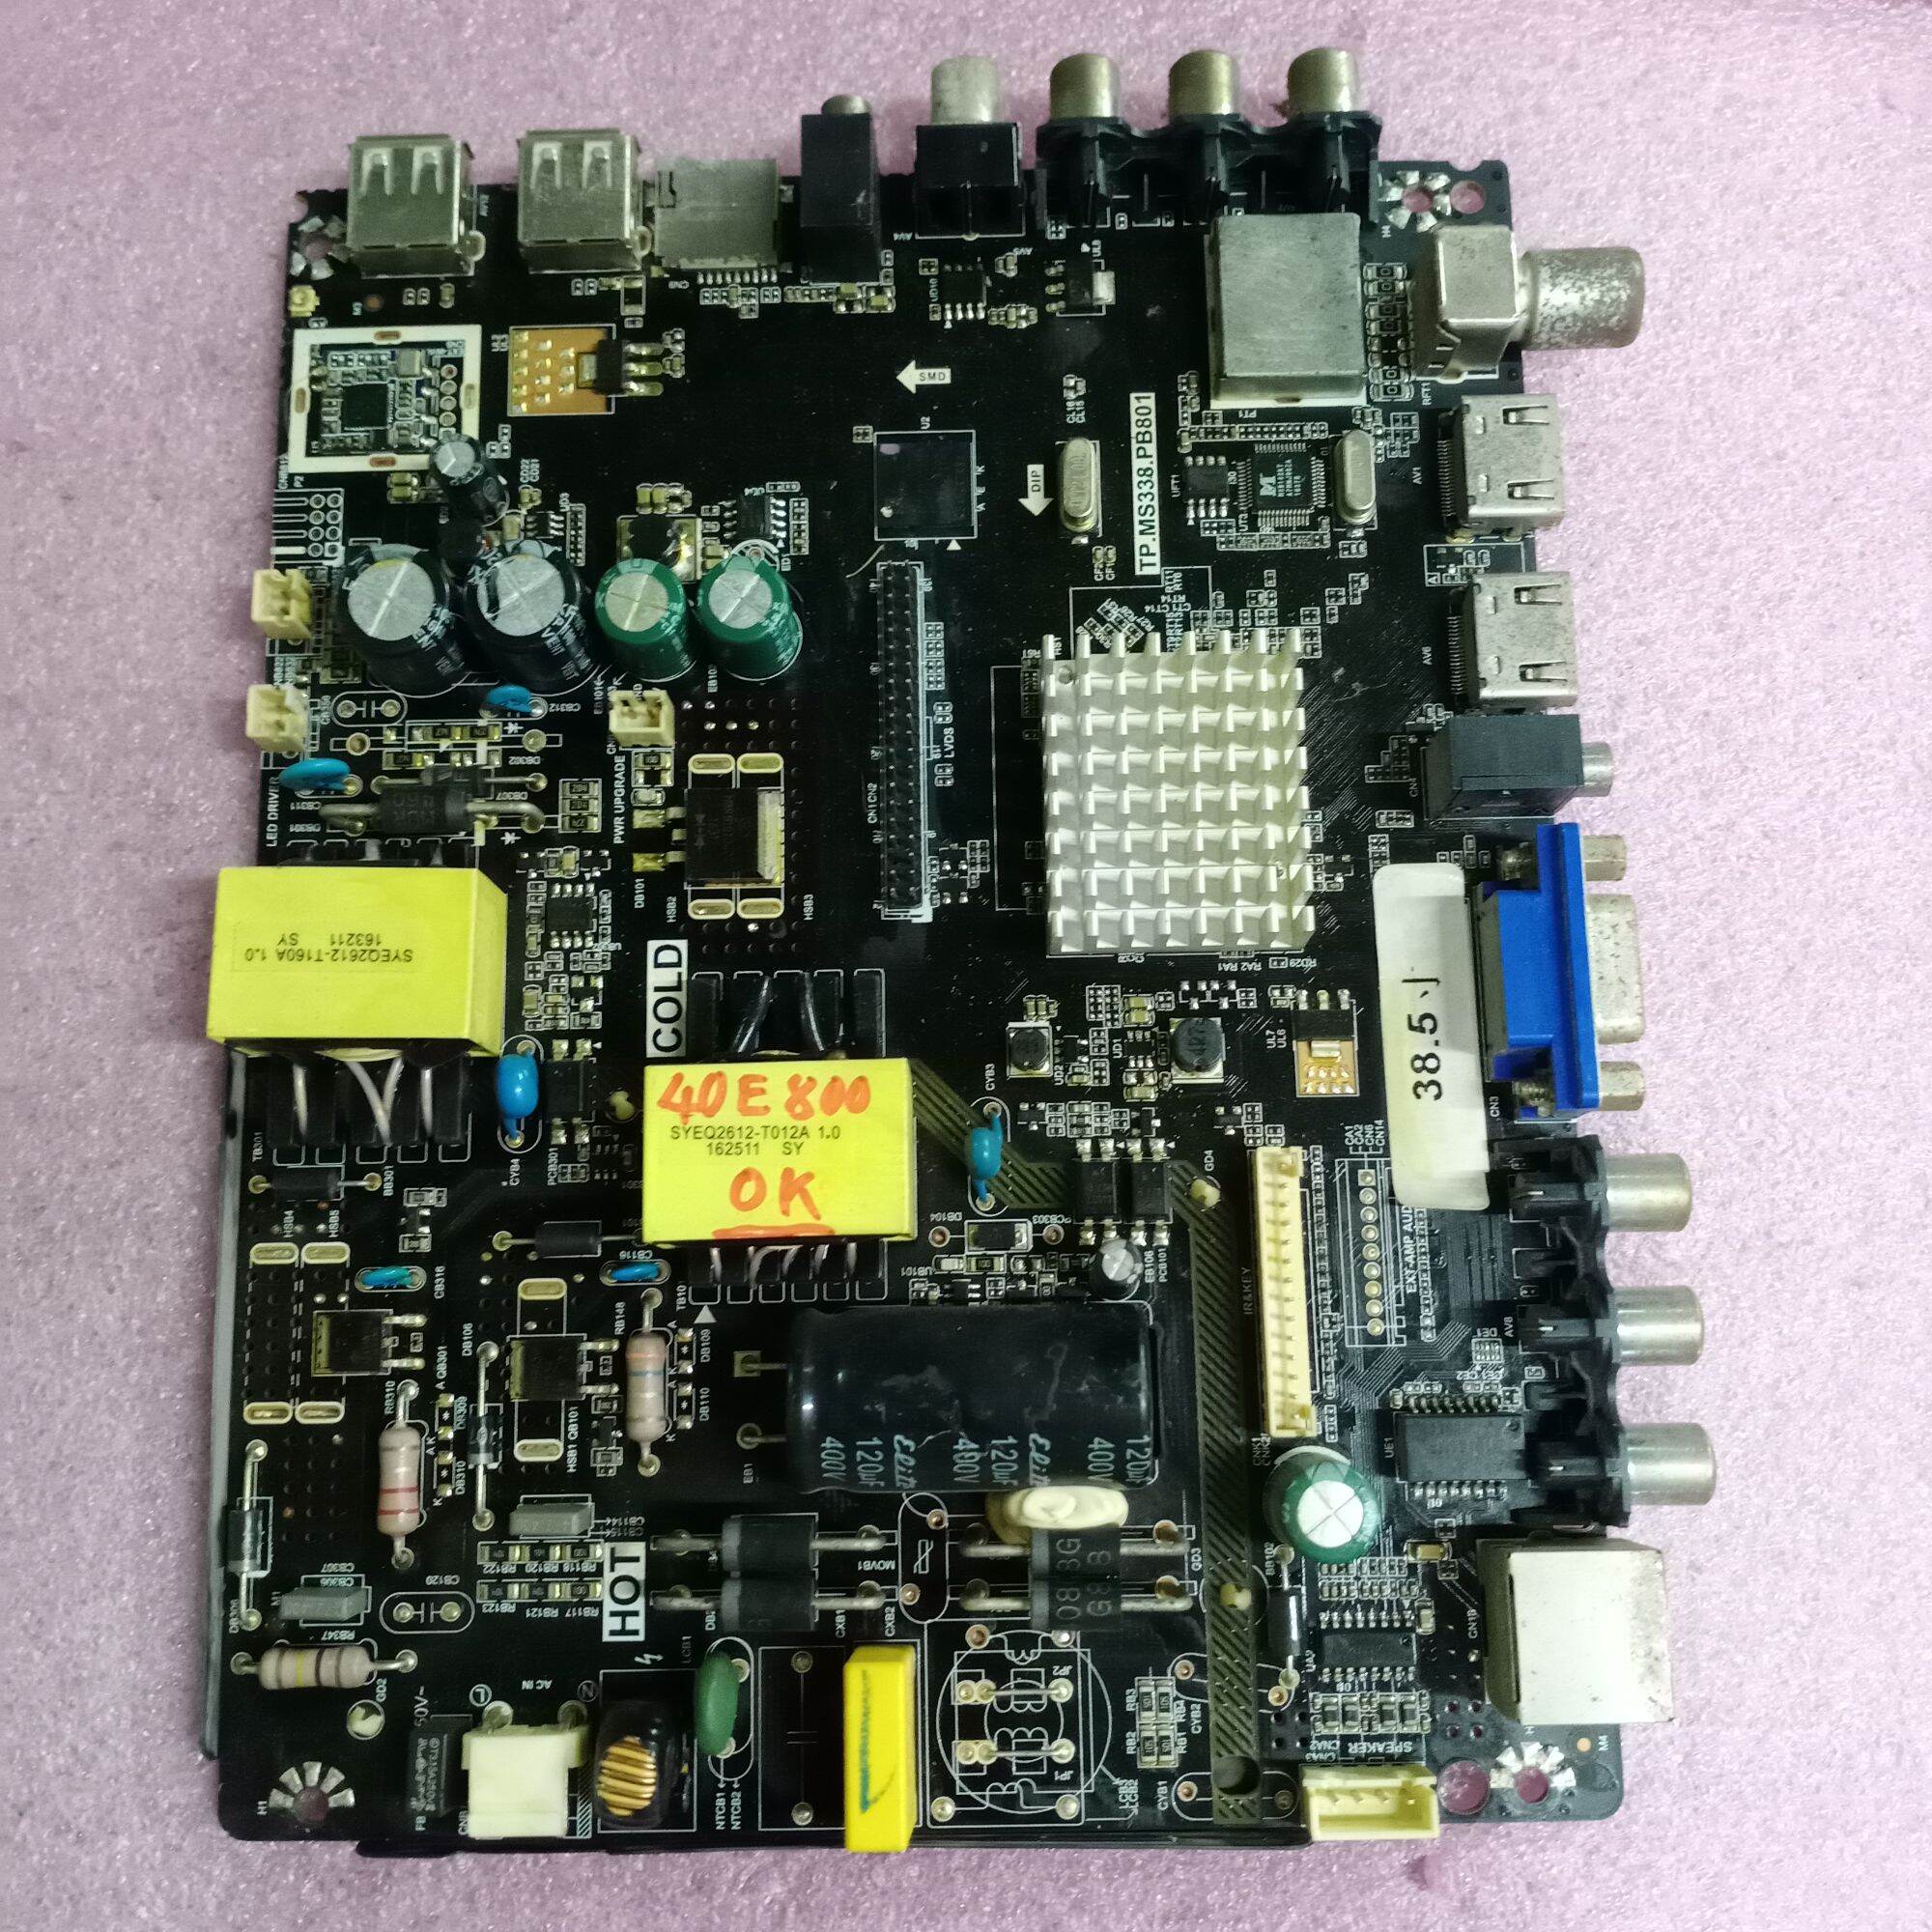 bo mạch tivi Asanzo 40E800,bo xử lý, khiển, nguồn, main chính, chủ